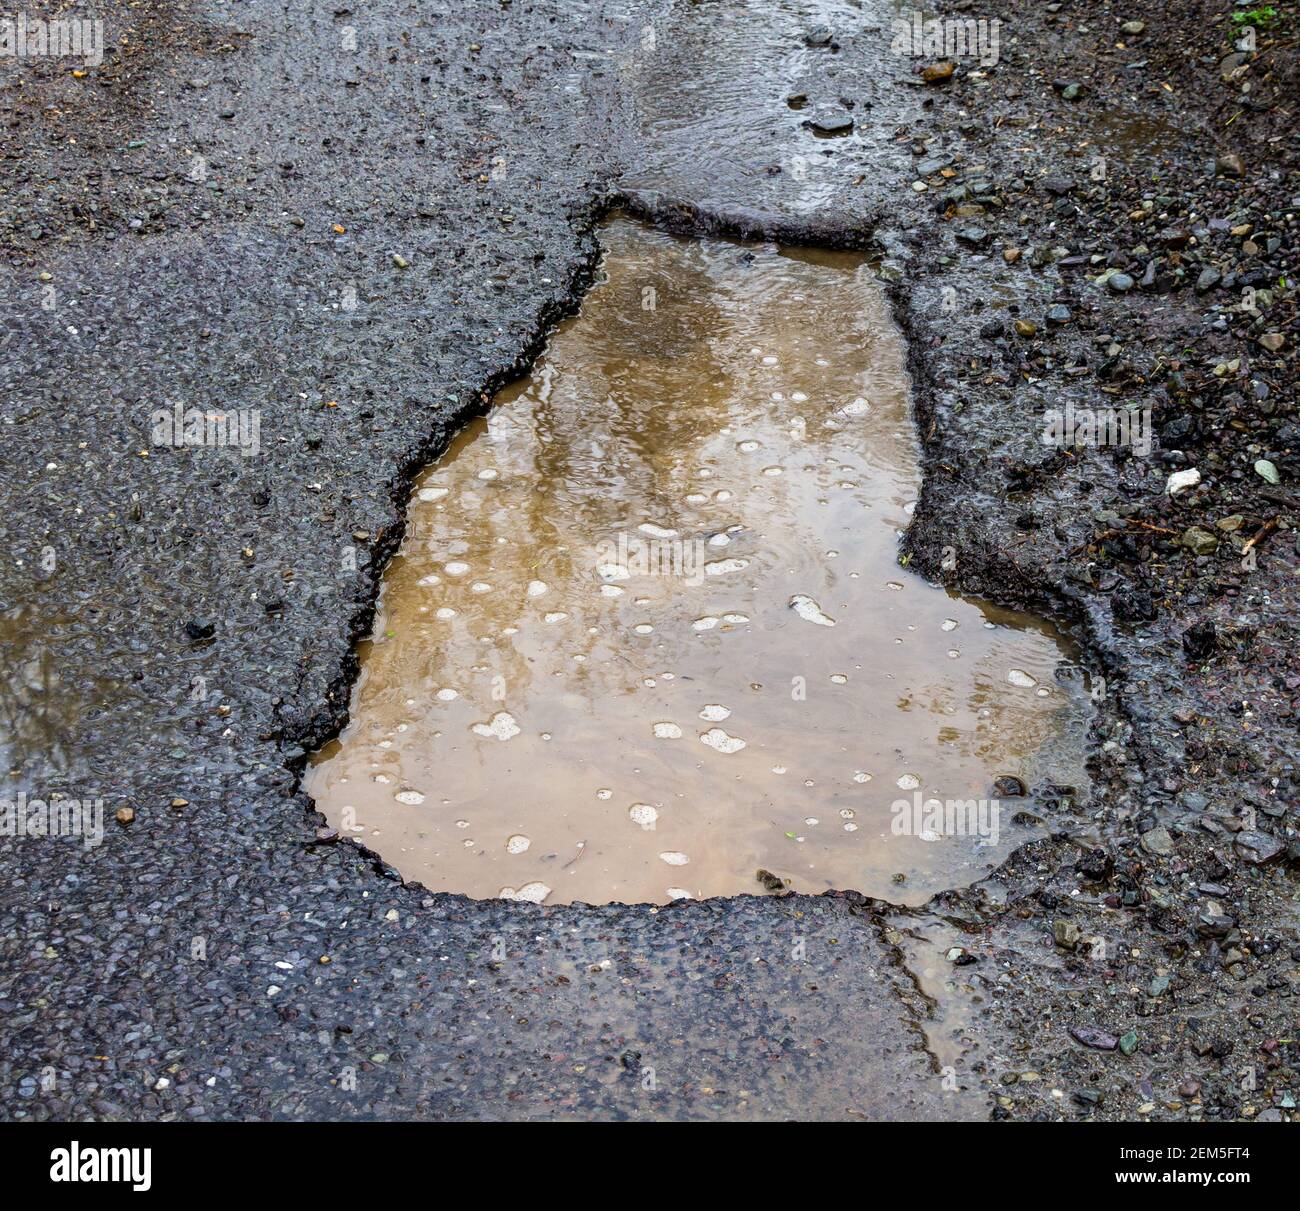 Pothole or pot hole damage in road surface Stock Photo